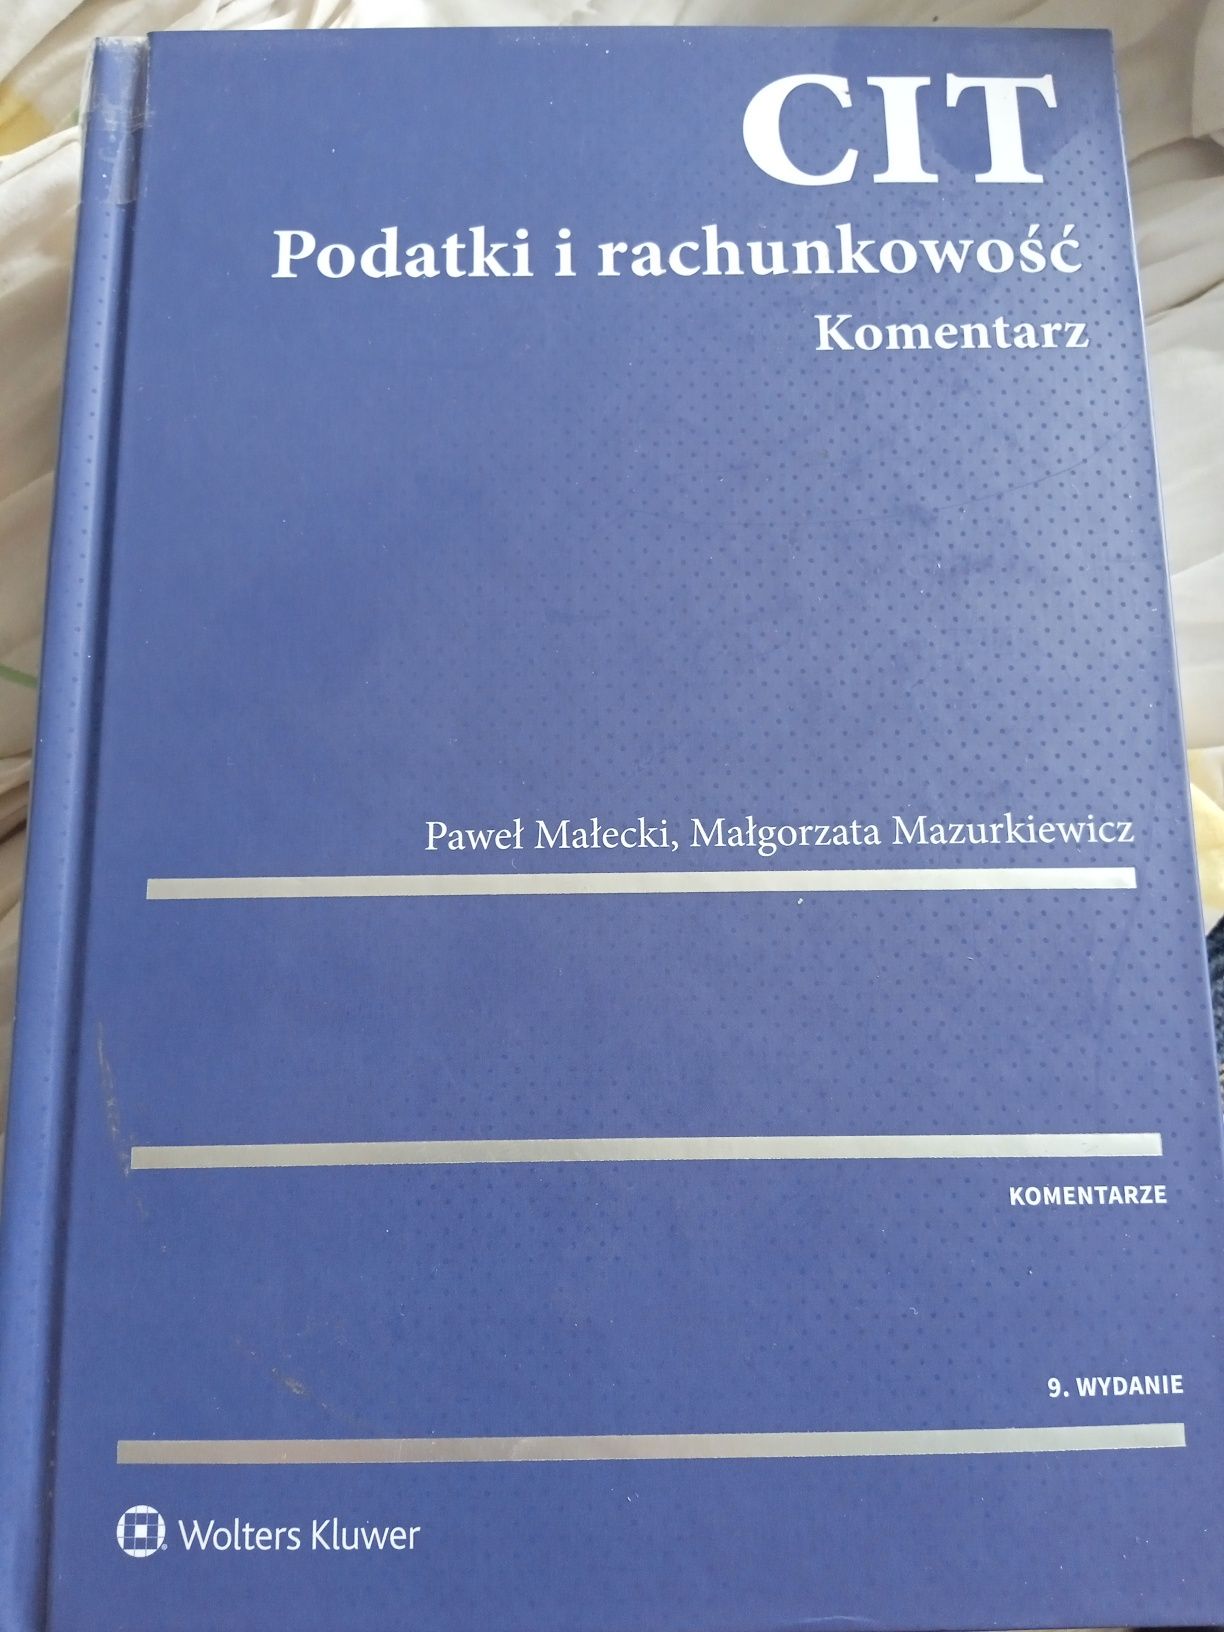 CIT Podatki i rachunkowość Komentarz Małecki Mazurkiewicz 9 wydanie